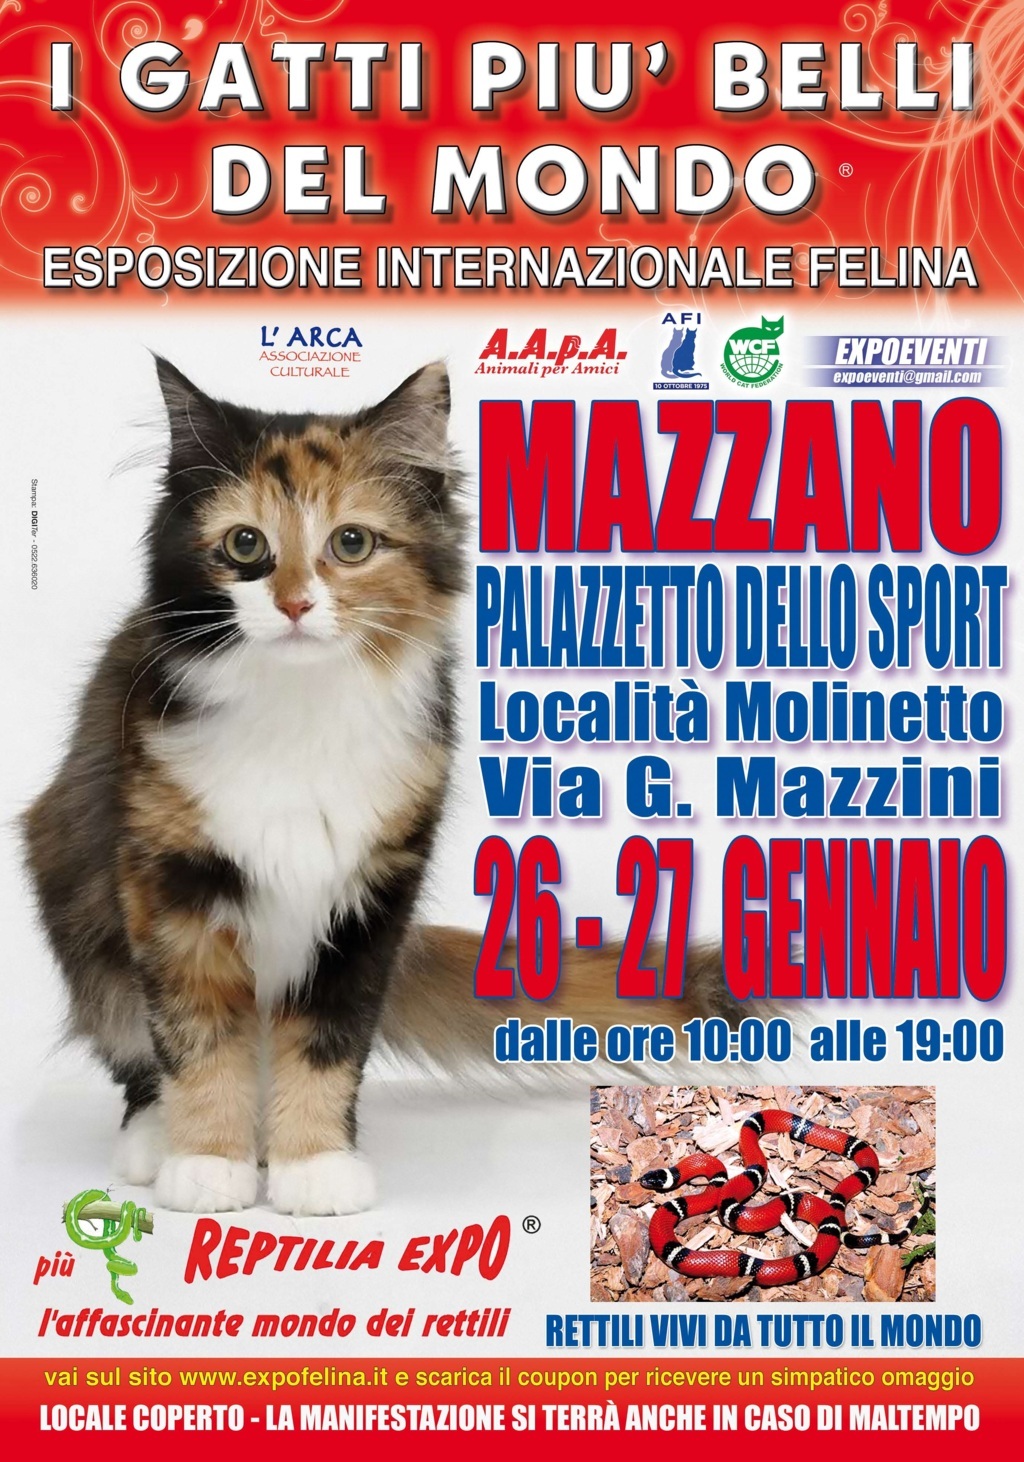 Foto 1 - I Gatti Più Belli del Mondo in passerella al Palasport di Mazzano (Brescia)